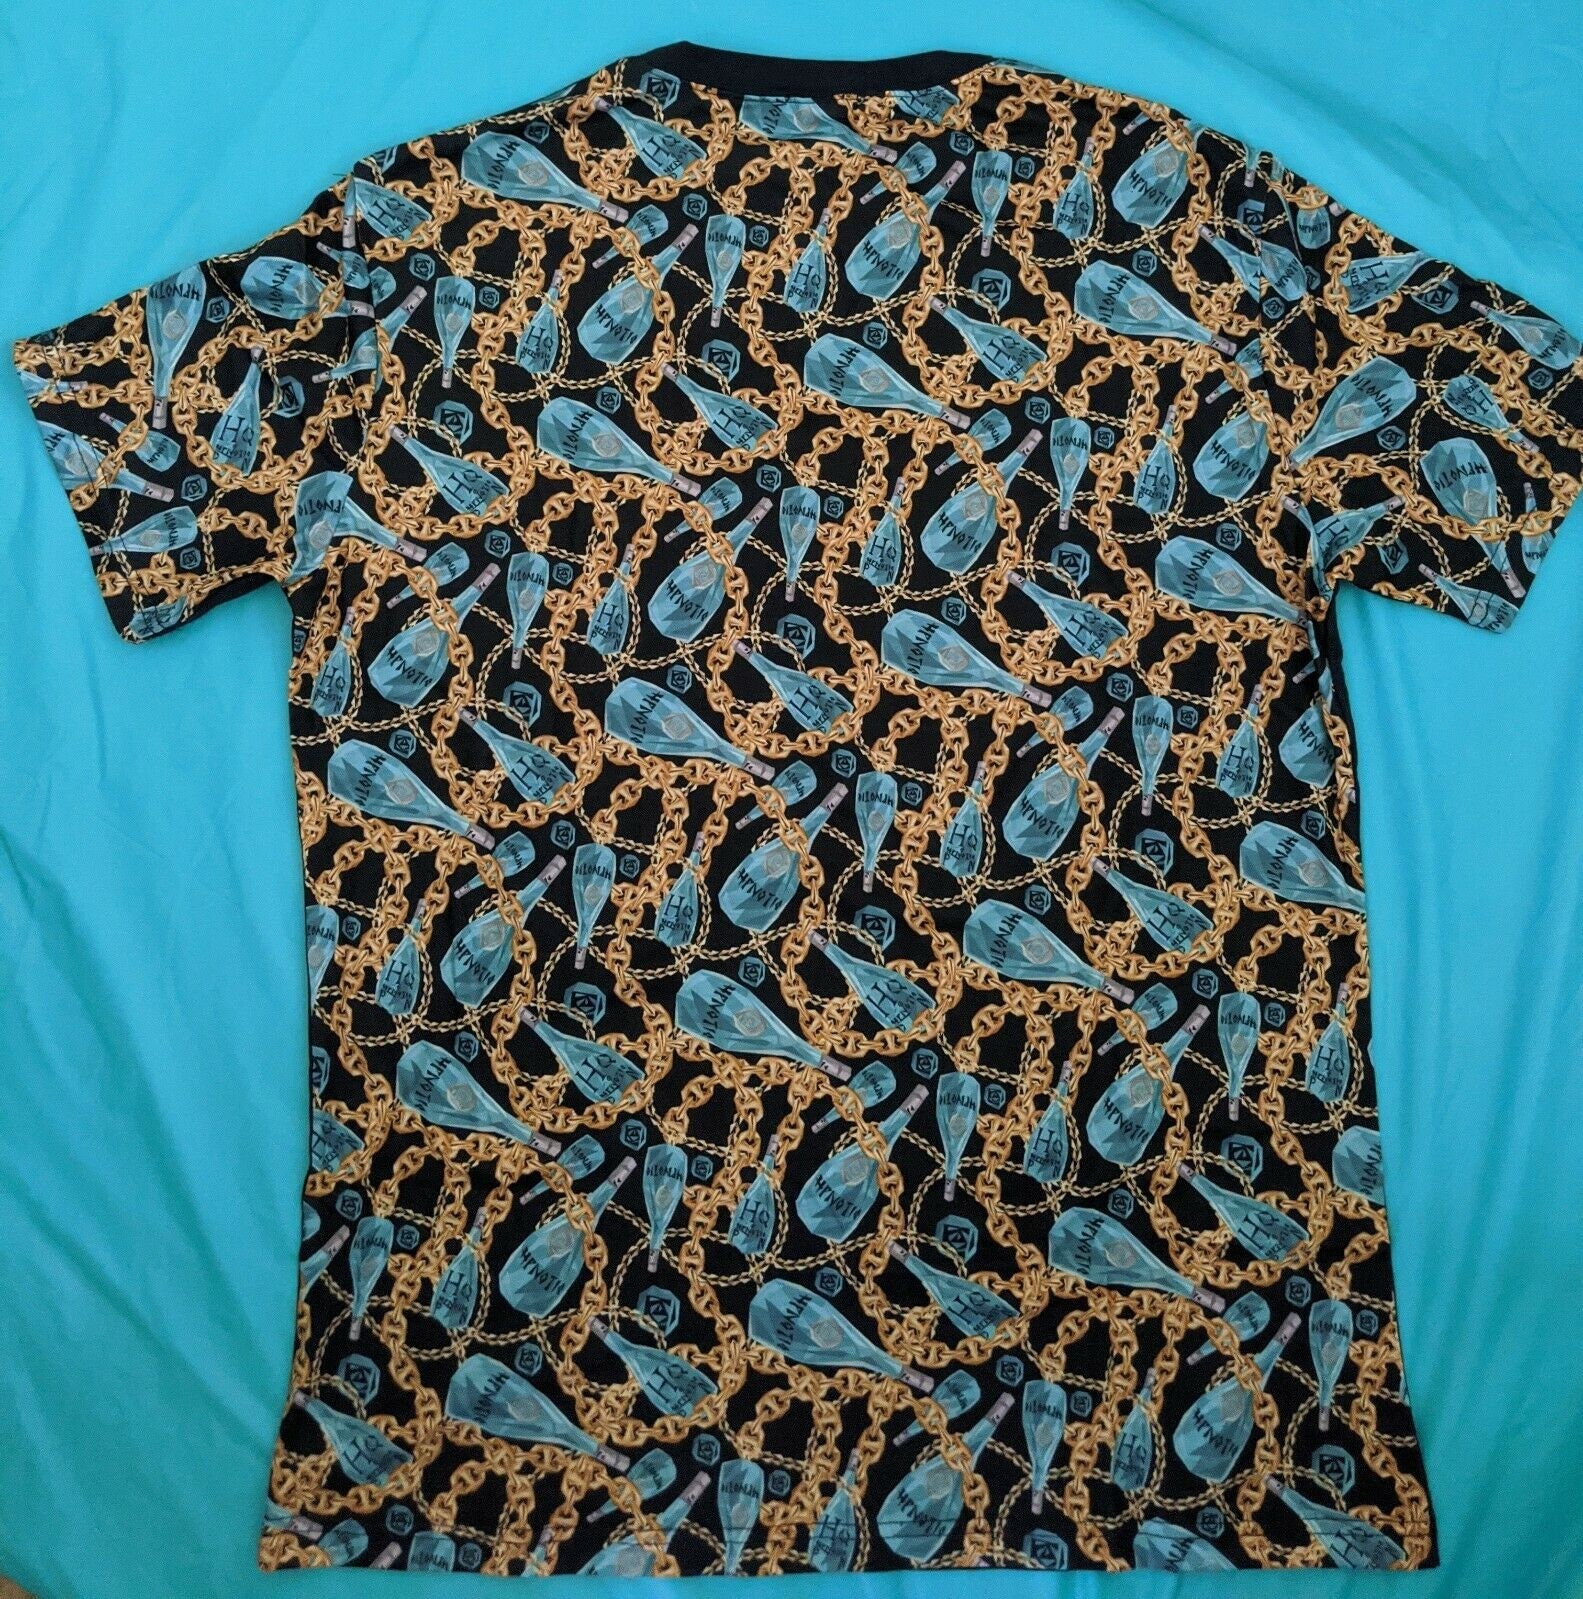 HPNOTIQ Adult Blue Xlarge/large T-shirt Short Sleeve and - Etsy